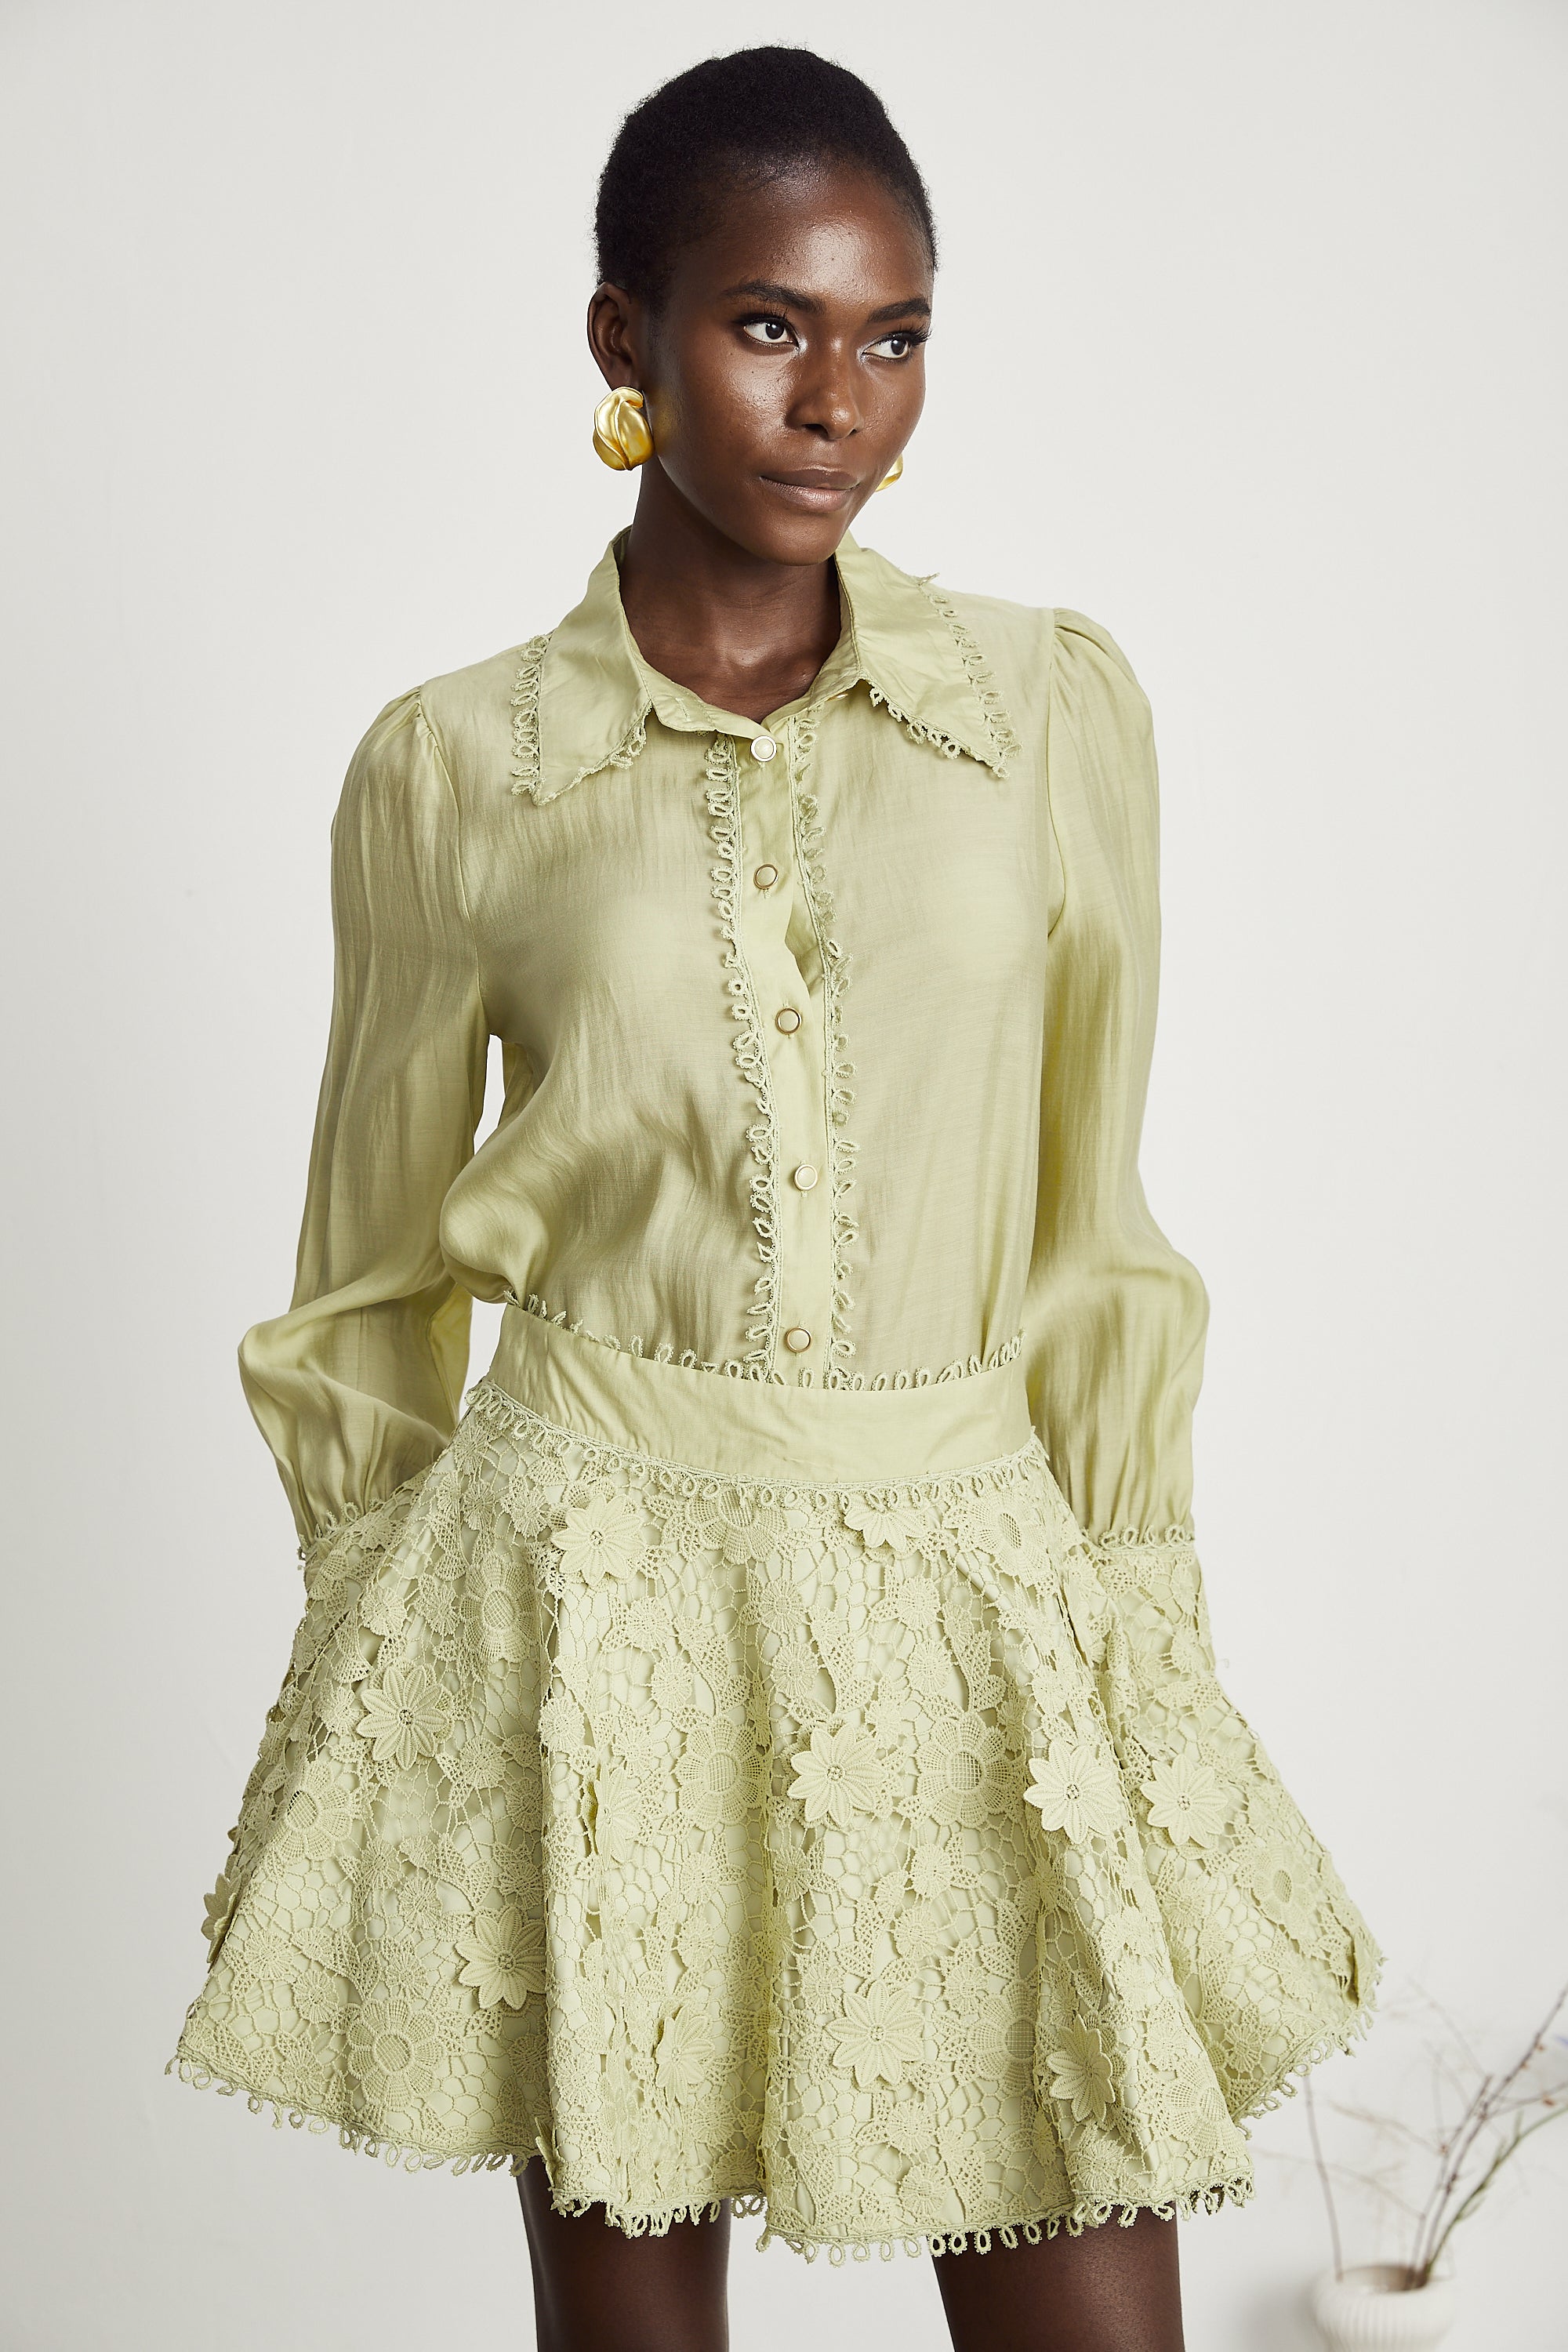 Hélène floral embroidered shirt & skirt matching set